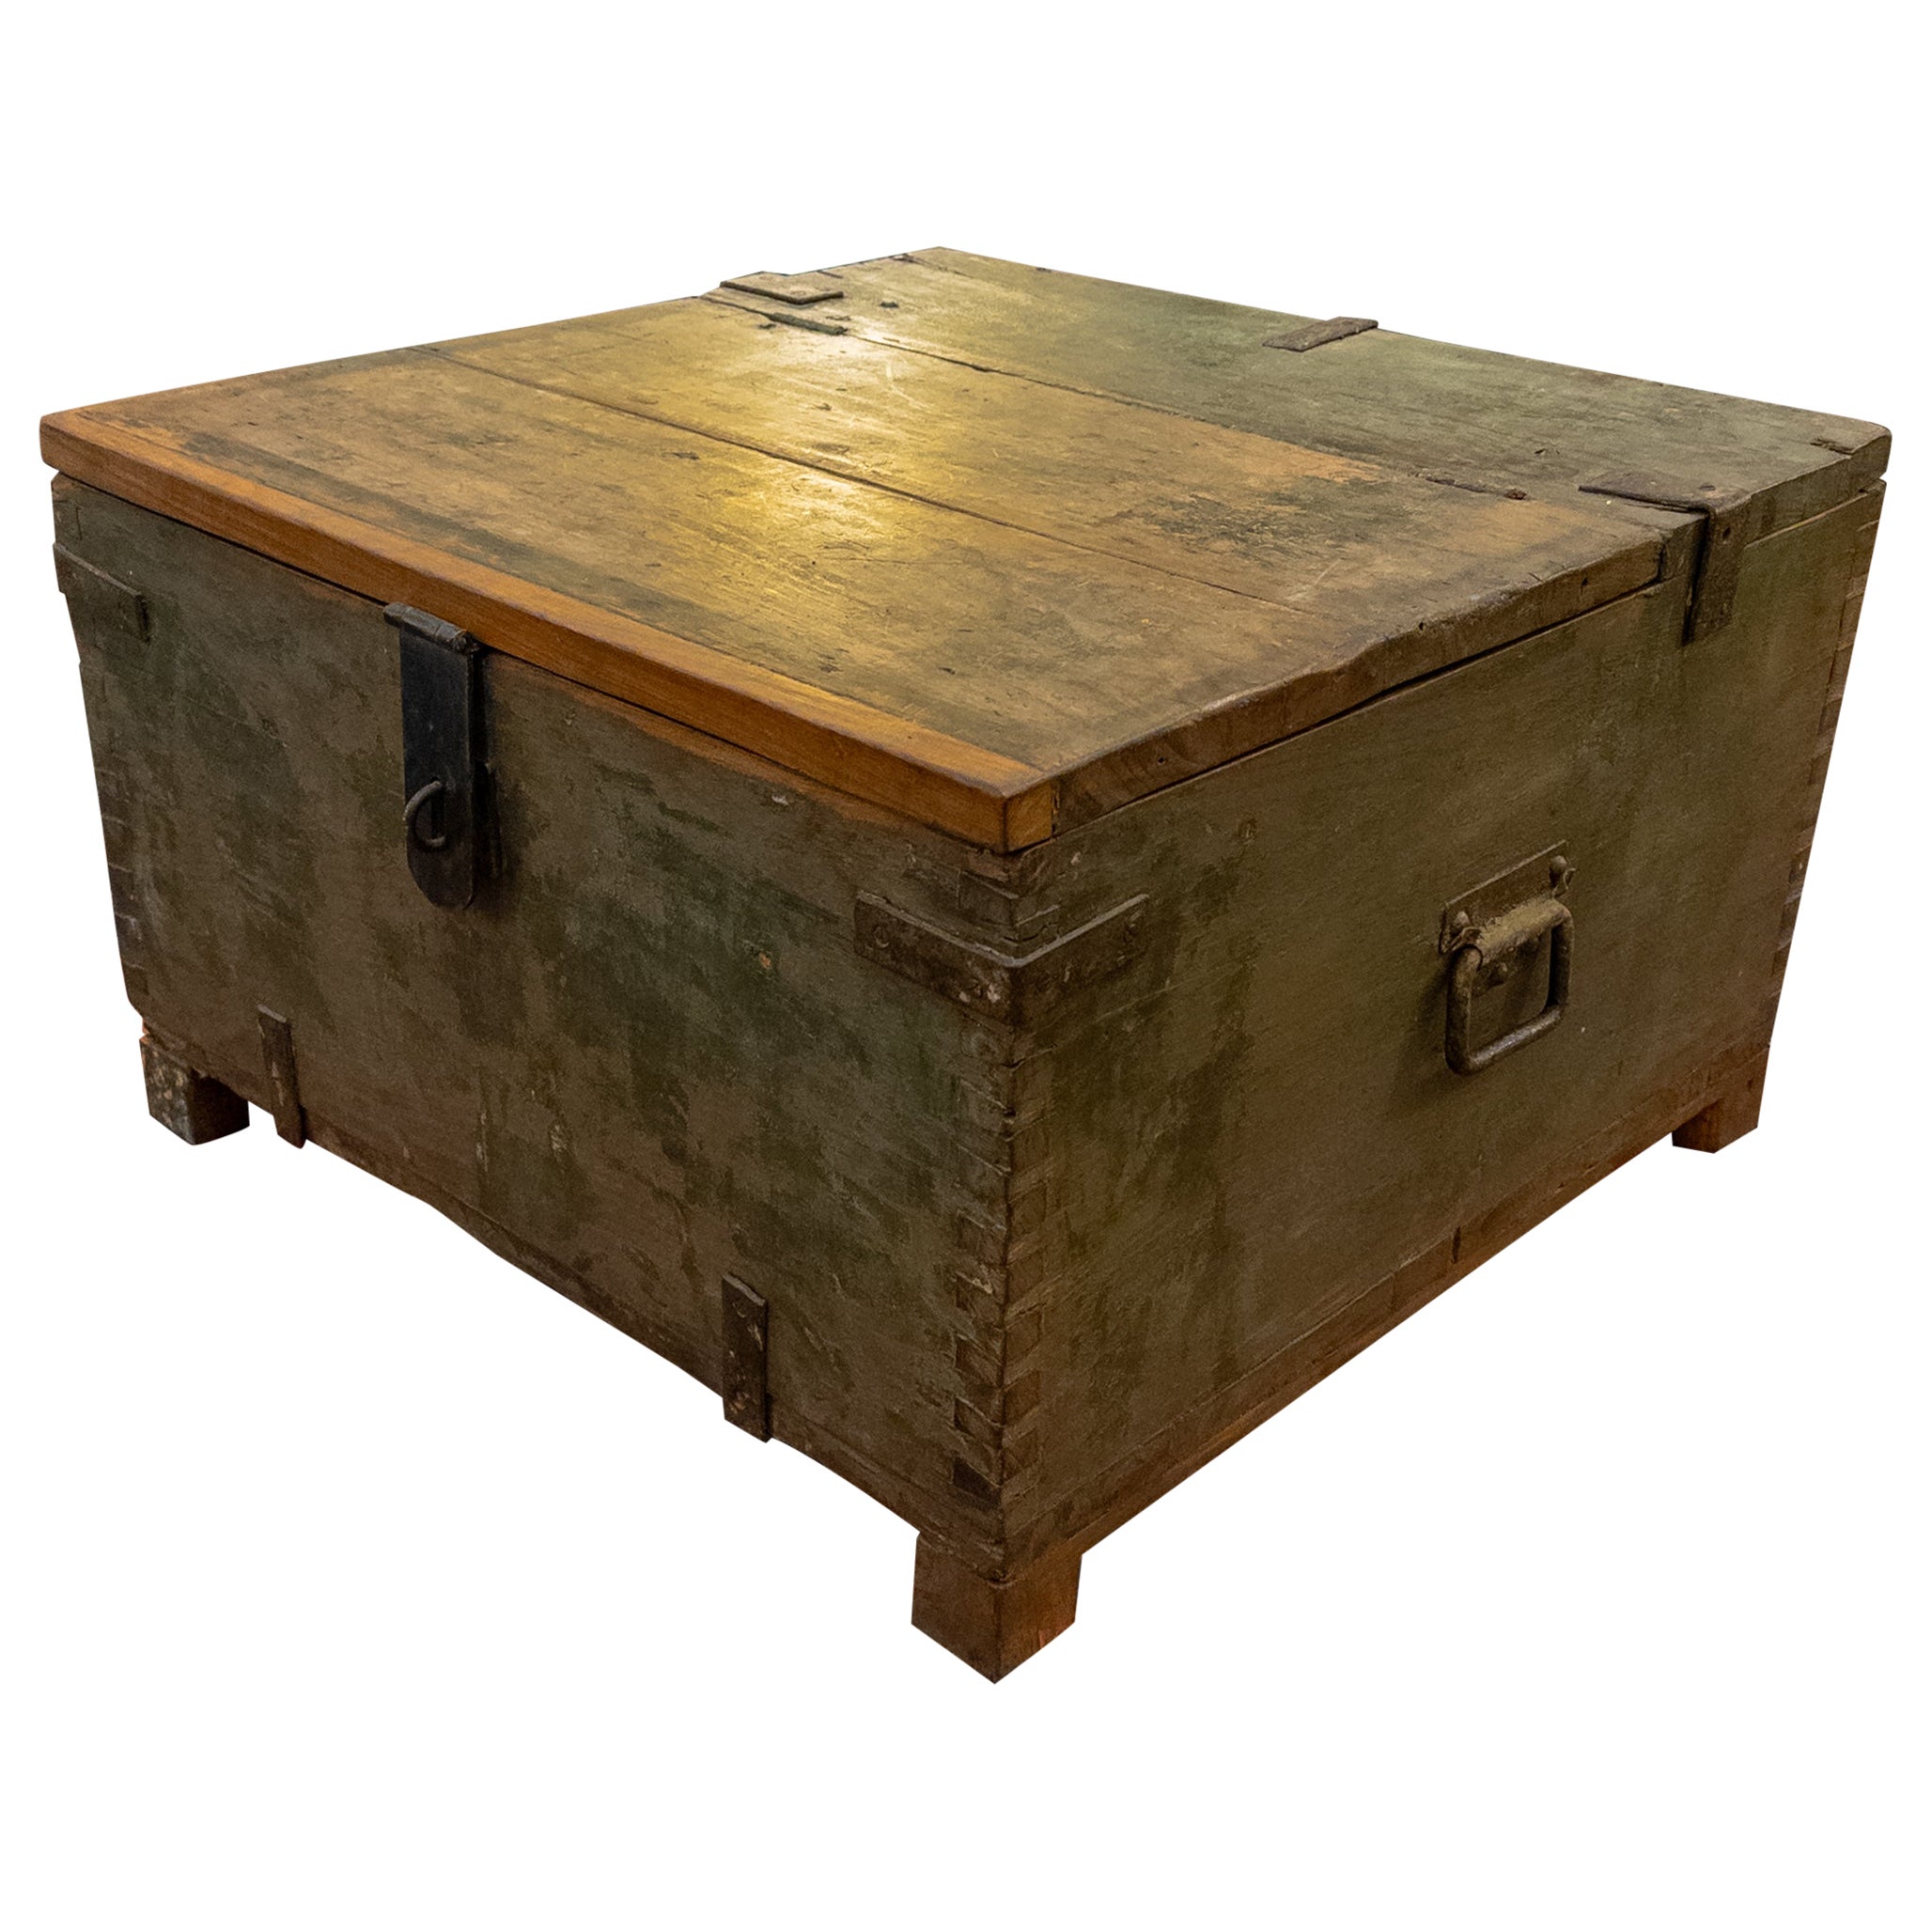 Antique Wooden Storage Trunk